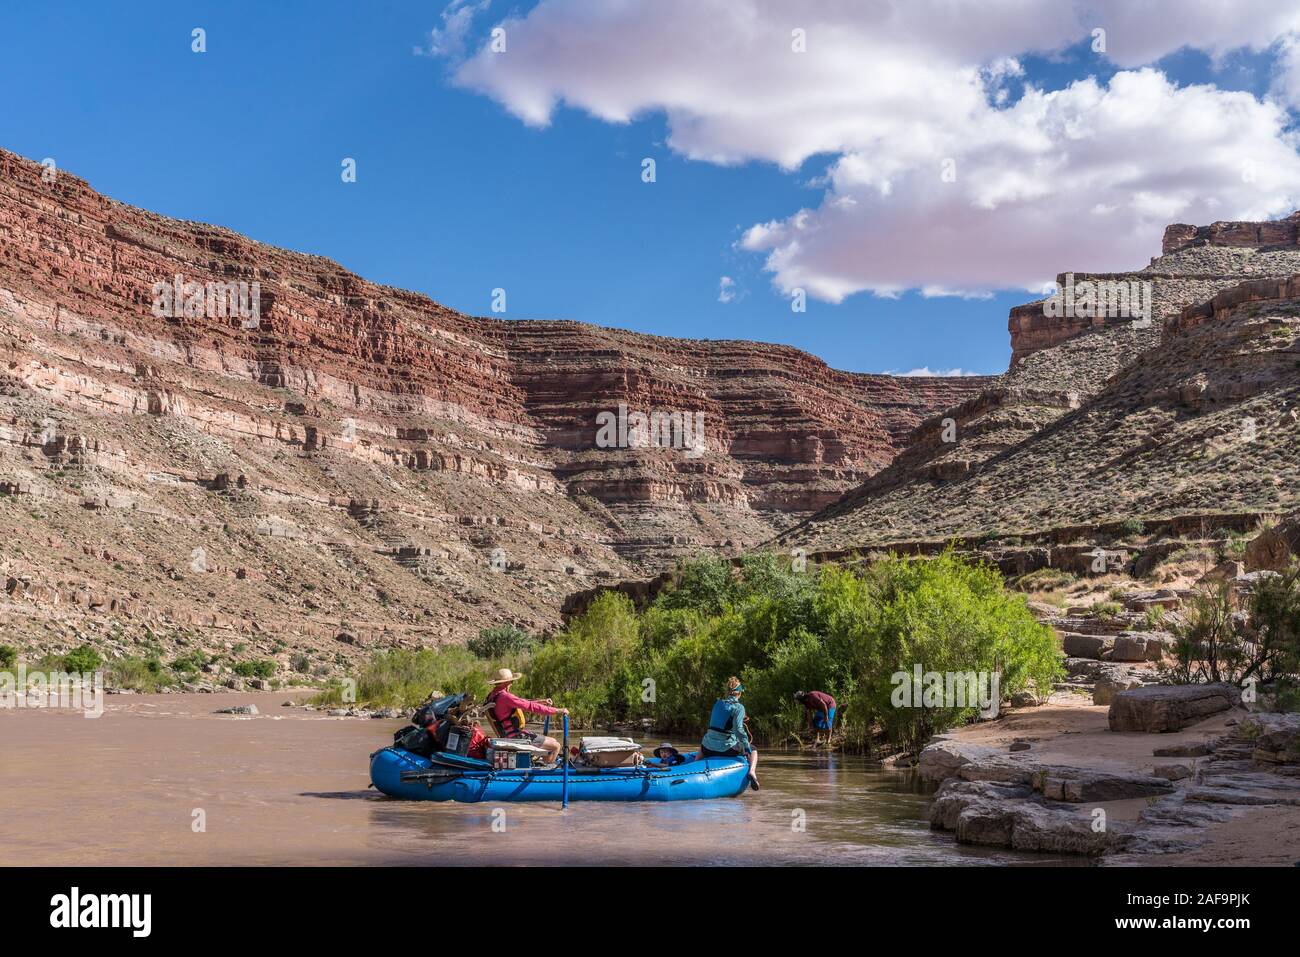 Une famille voyage de rafting dans le canyon de la Rivière San Juan, dans le sud-est de l'Utah, USA. Banque D'Images